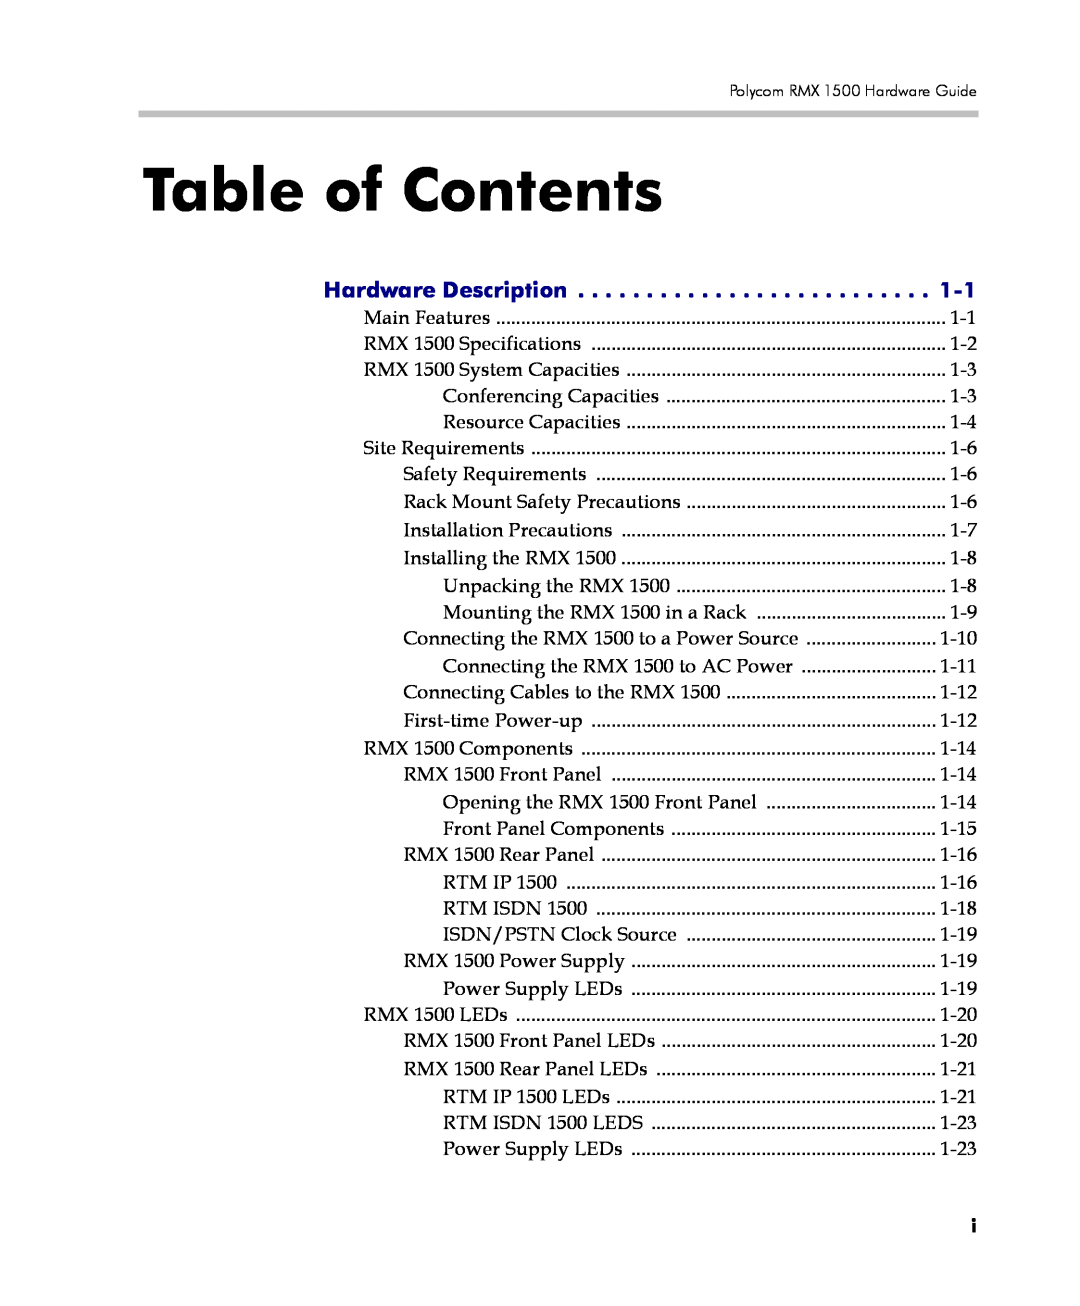 Polycom DOC2557C manual Table of Contents, Hardware Description 